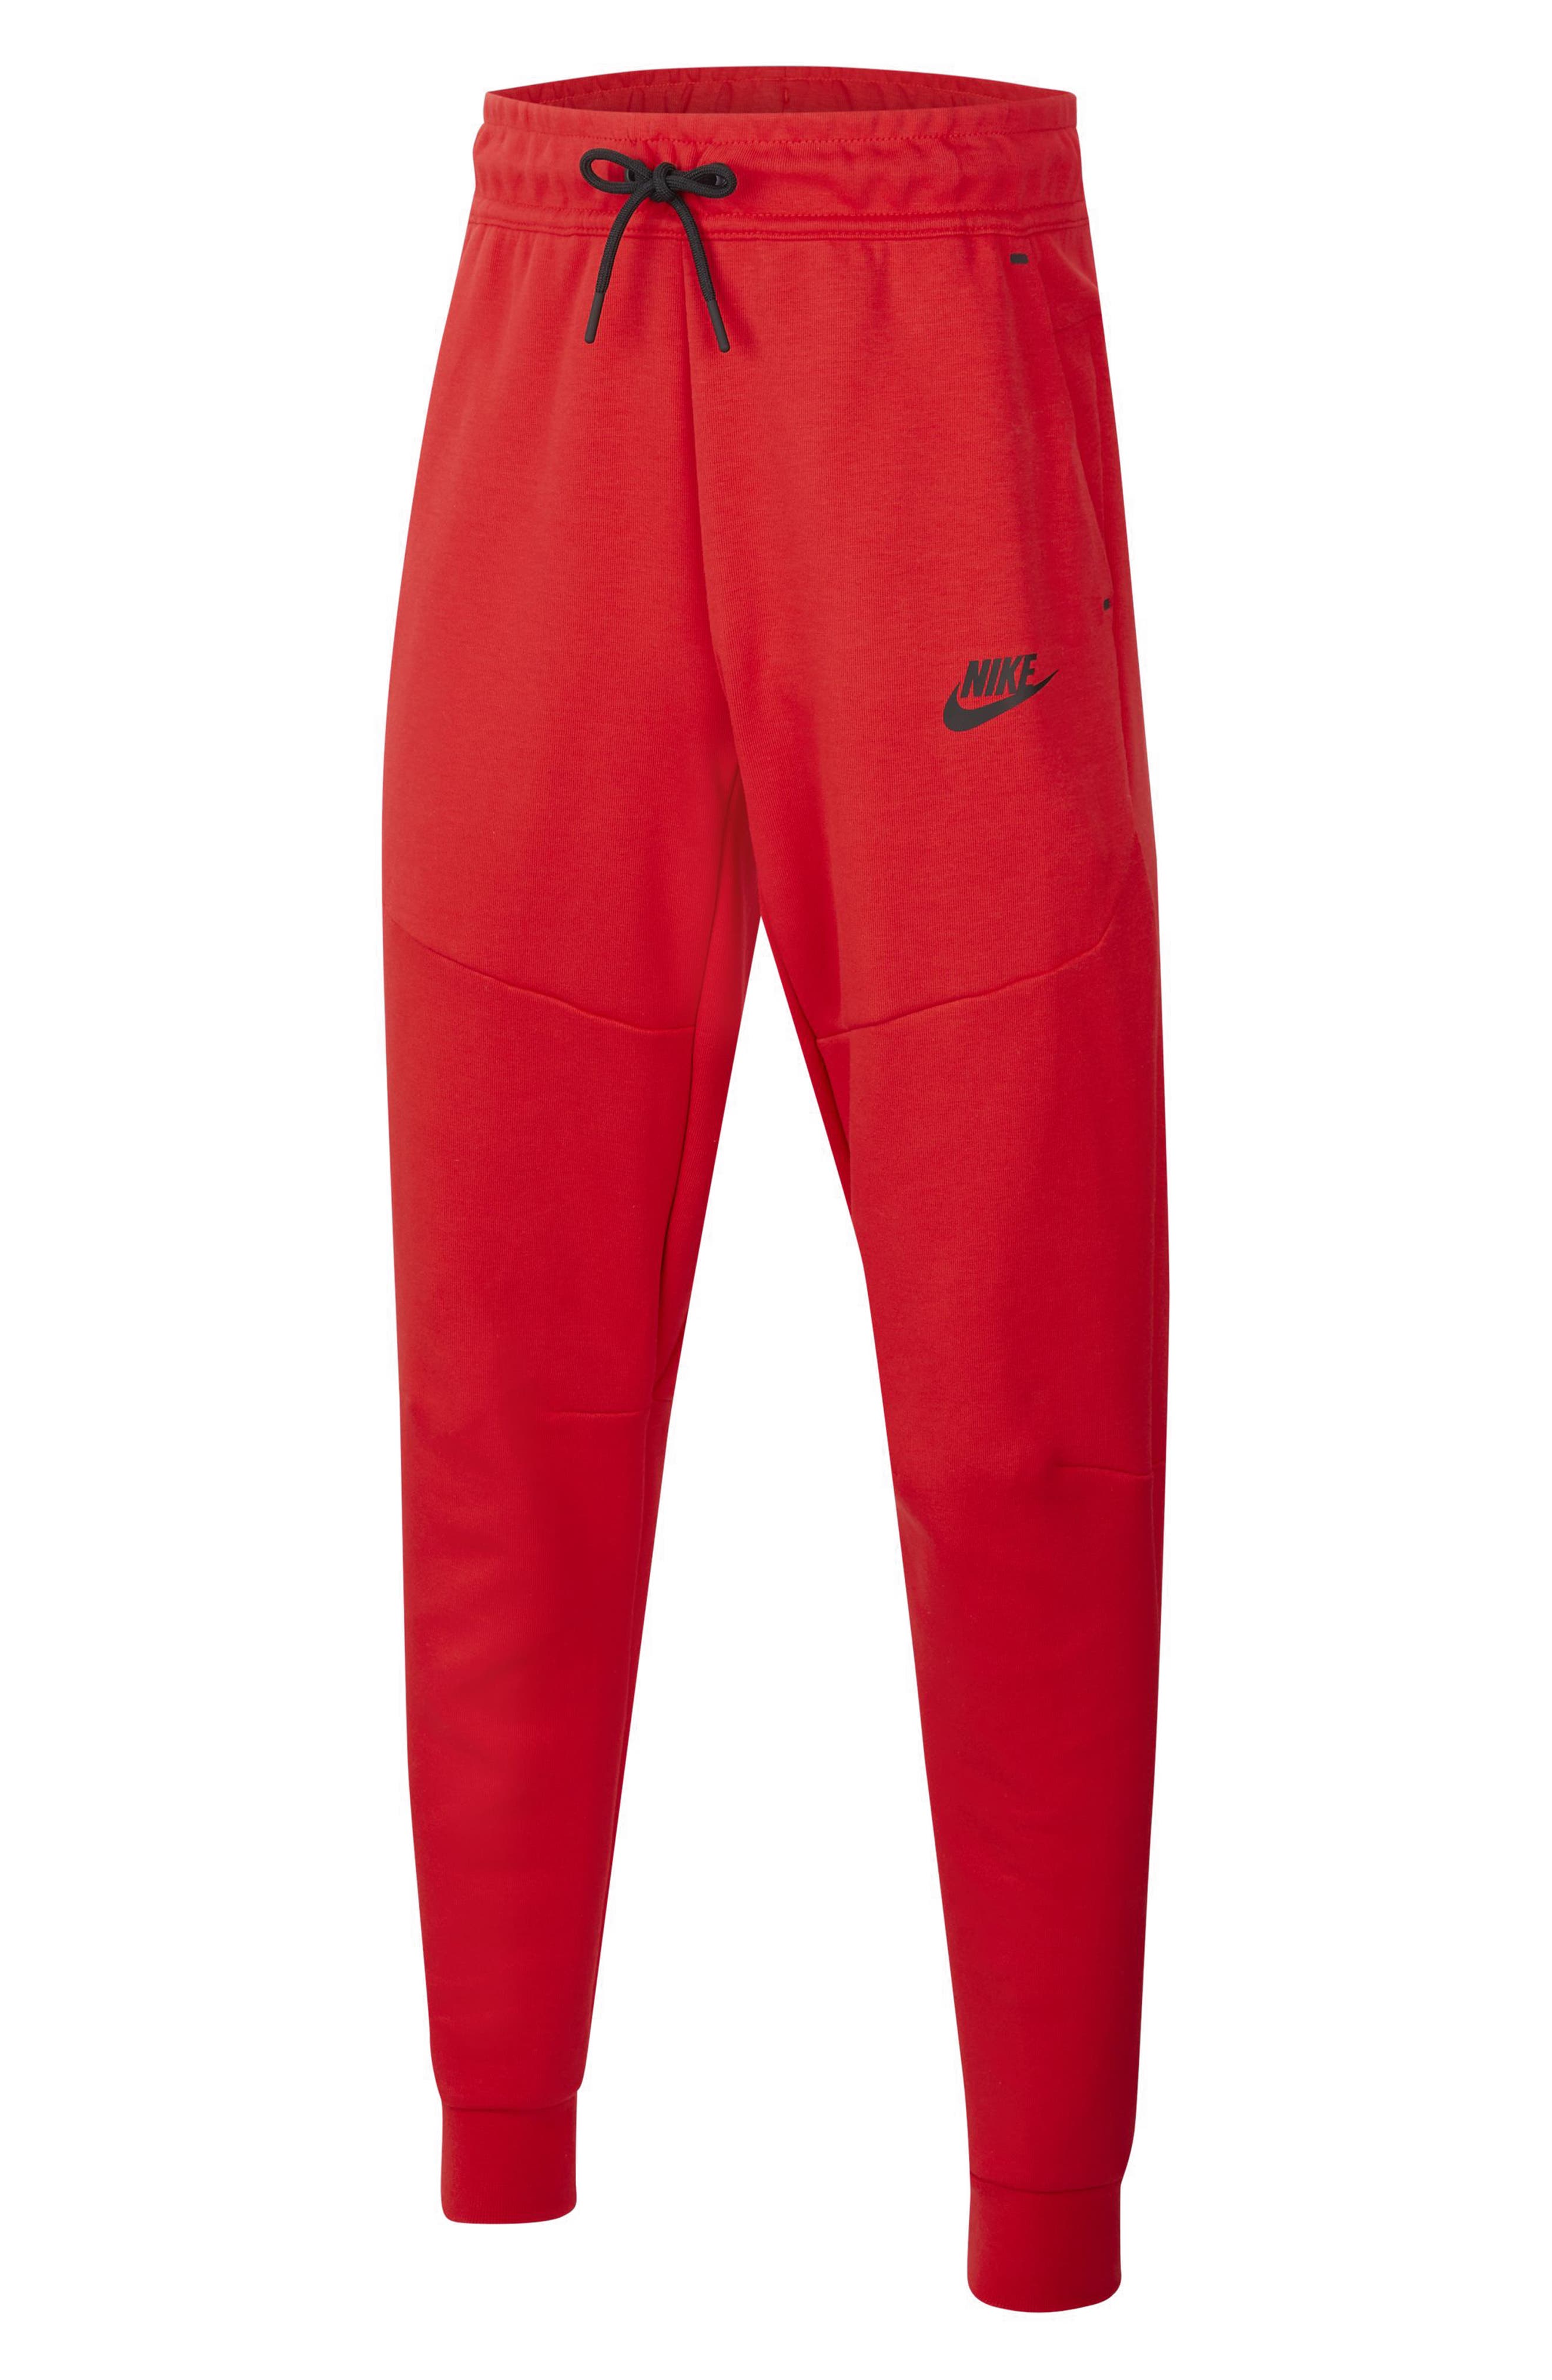 Boys' Nike Pants (Sizes 2T-7): Corduroy 